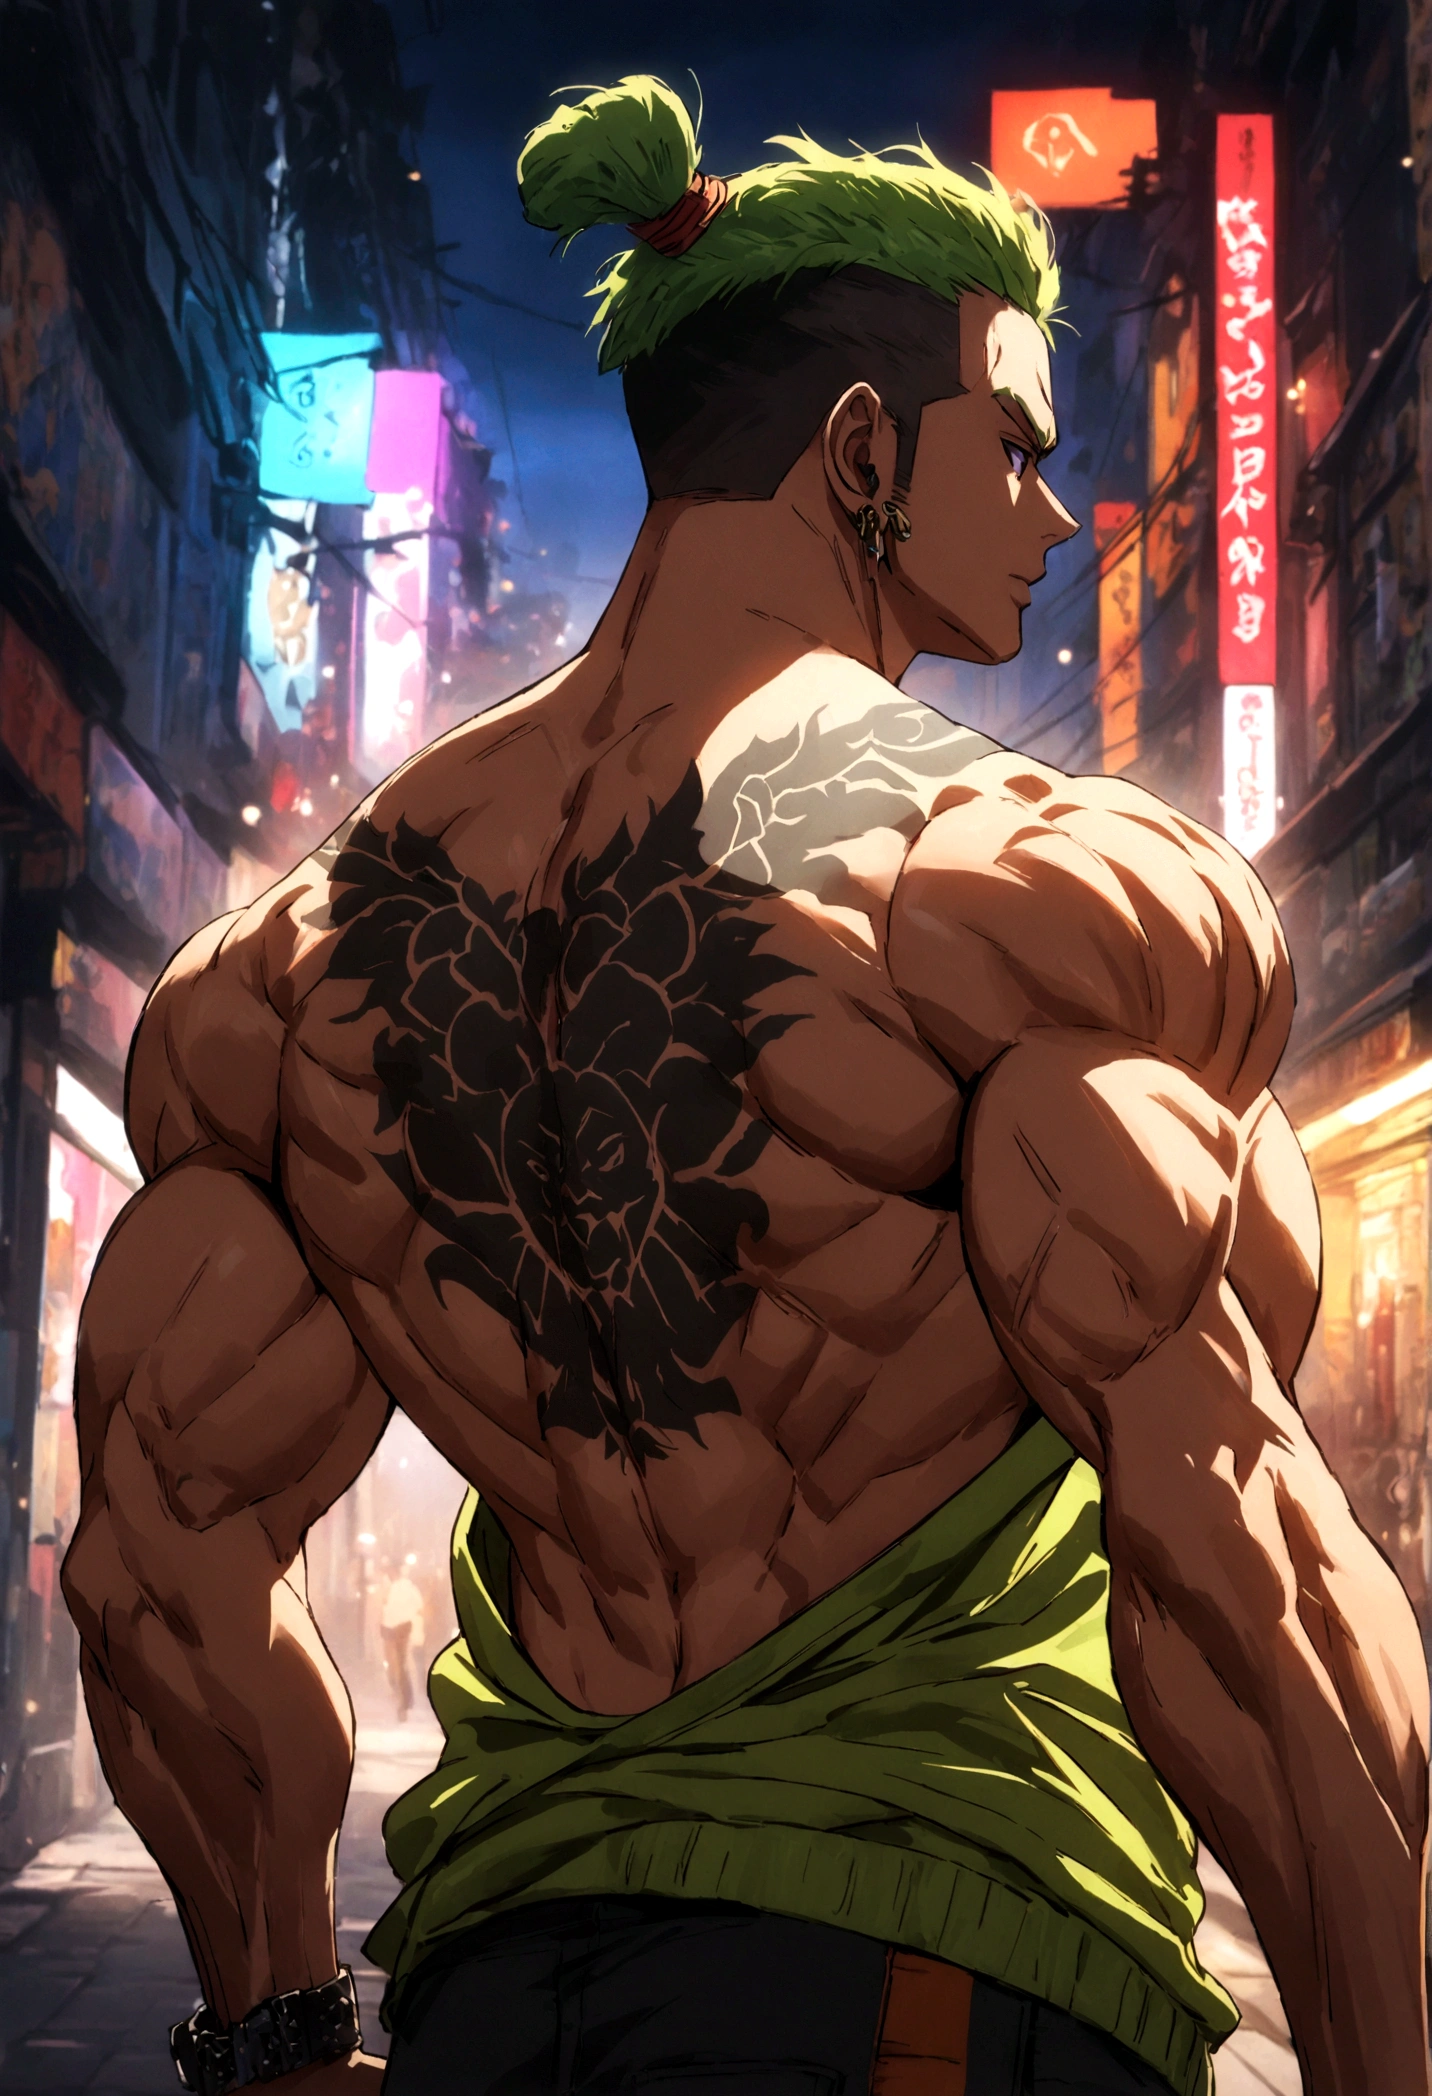 menino forte e musculoso com tatuagem de Guan Yu nas costas nuas e tonificadas, estilo de rua, Detalhes de alta resolução, vibração urbana, cores vibrantes, iluminação dramática